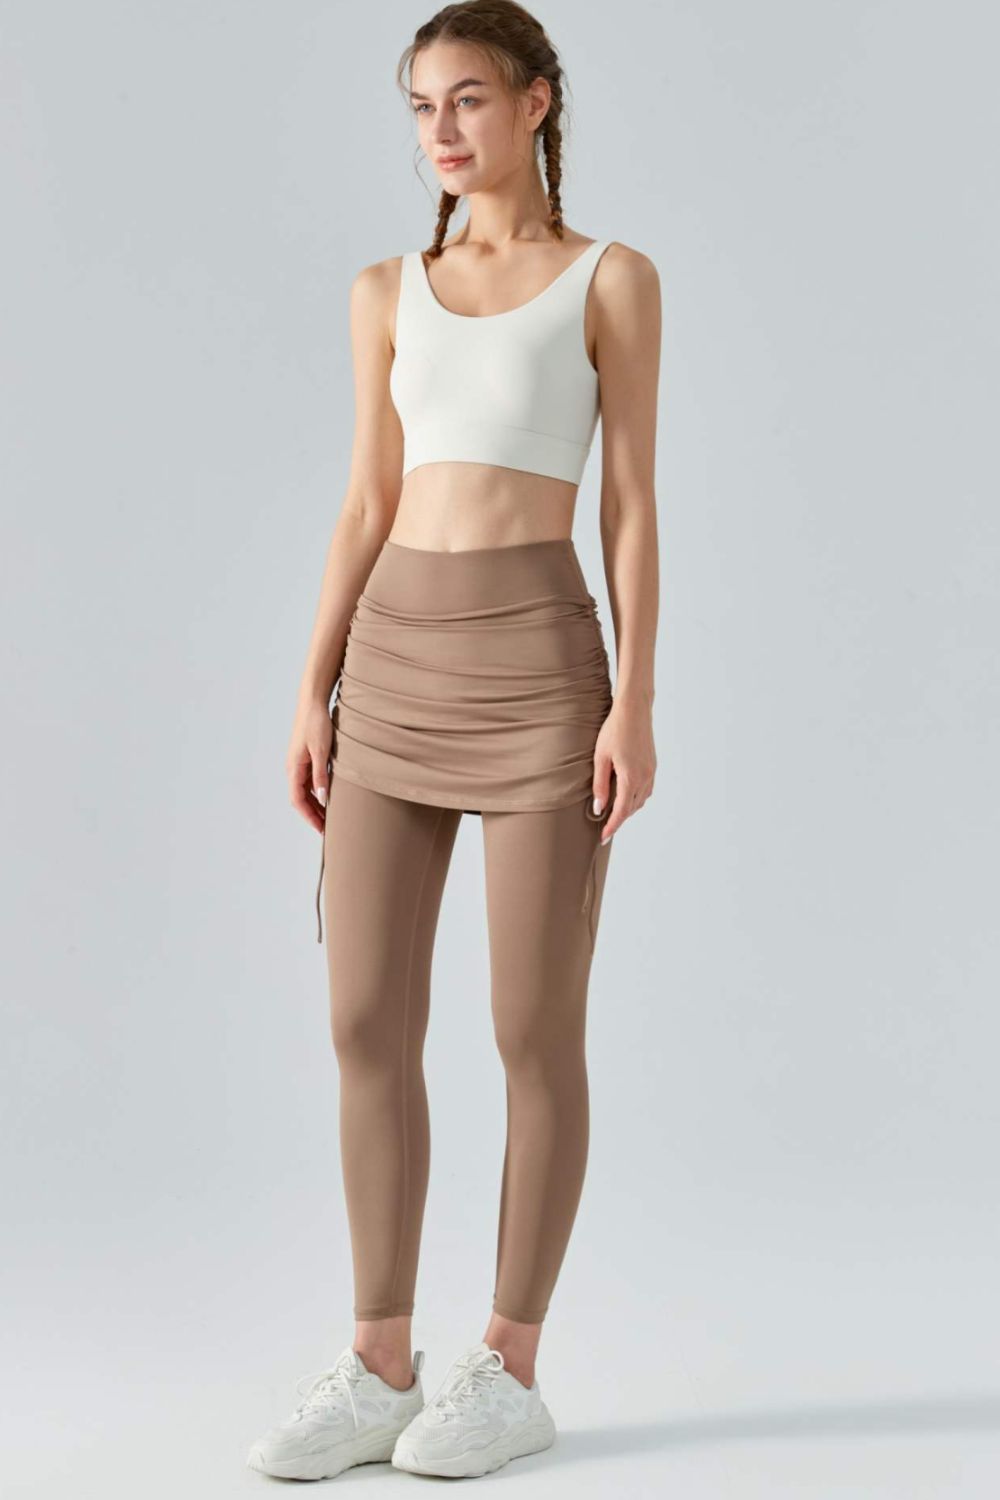 Yoga Leggings Mini Skirt Dress Women's Sports Pants Fitness Gym Stretch  Skirt | eBay